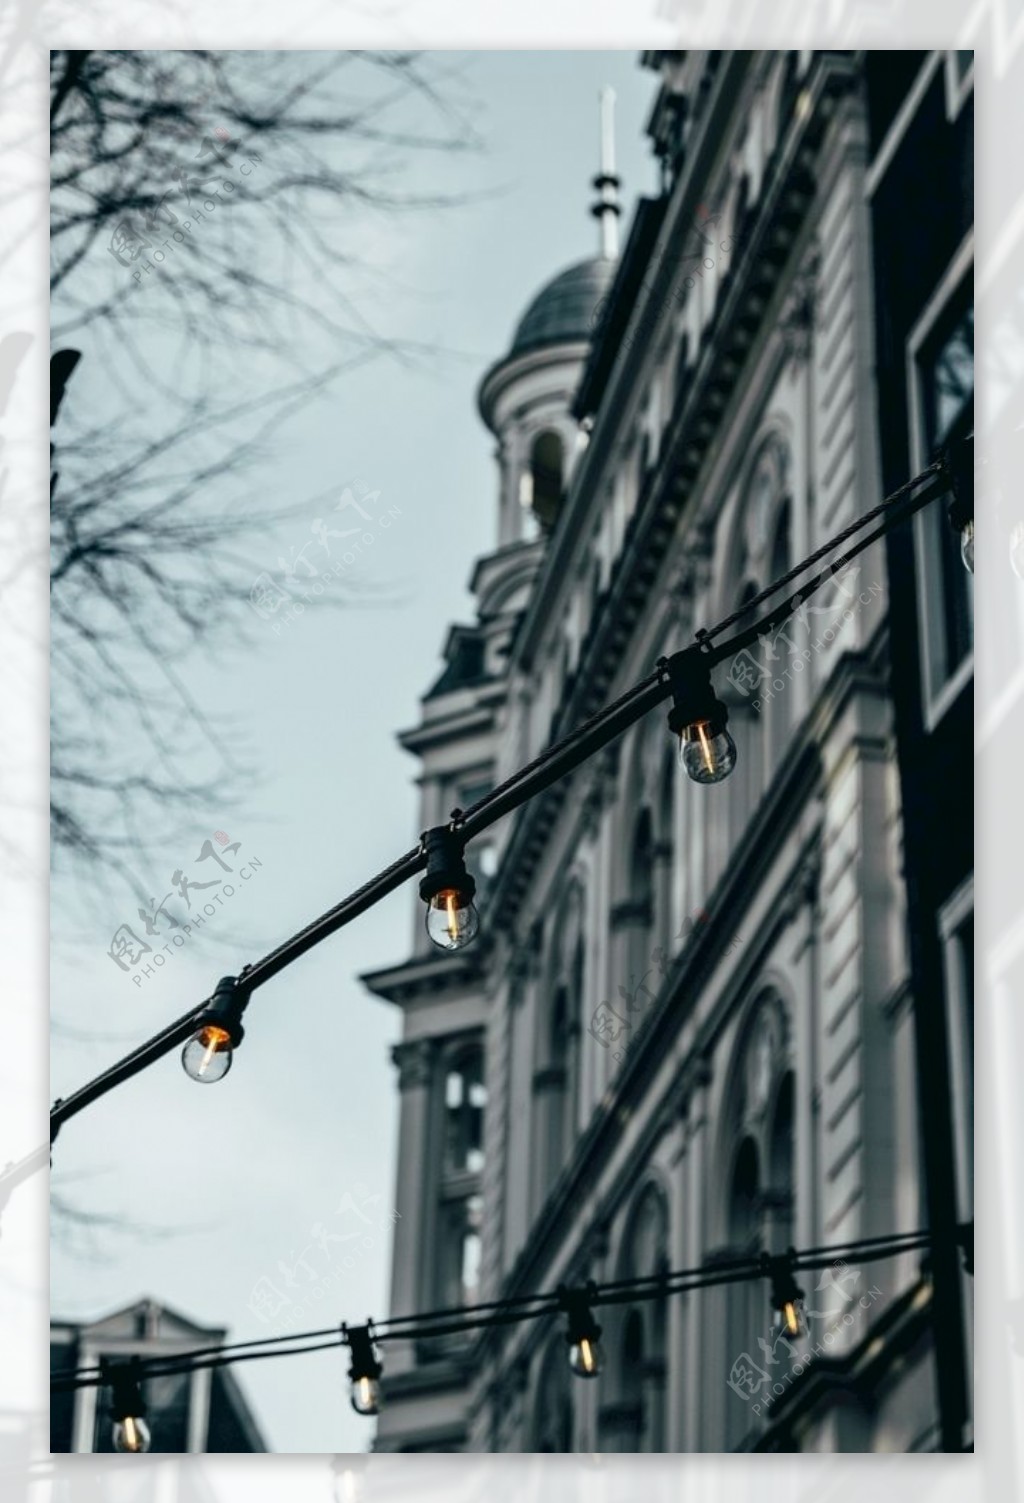 欧美街上的装饰灯